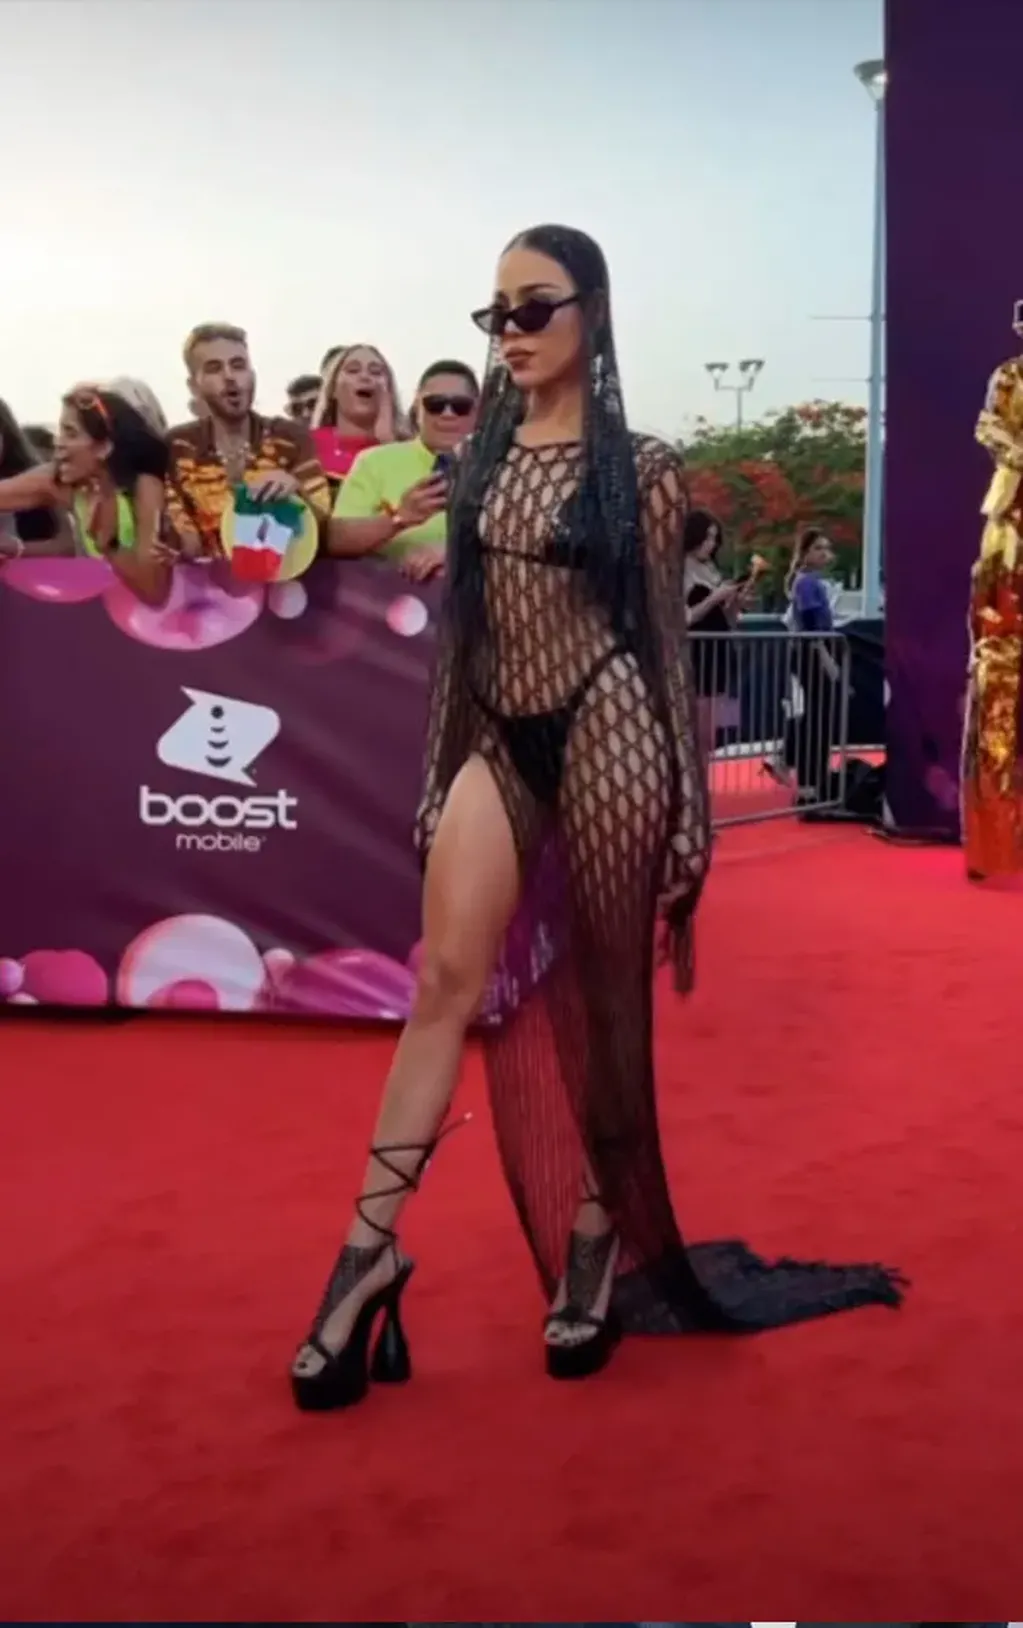 Danna Paola enloqueció a sus fans con un vestido metalizado.